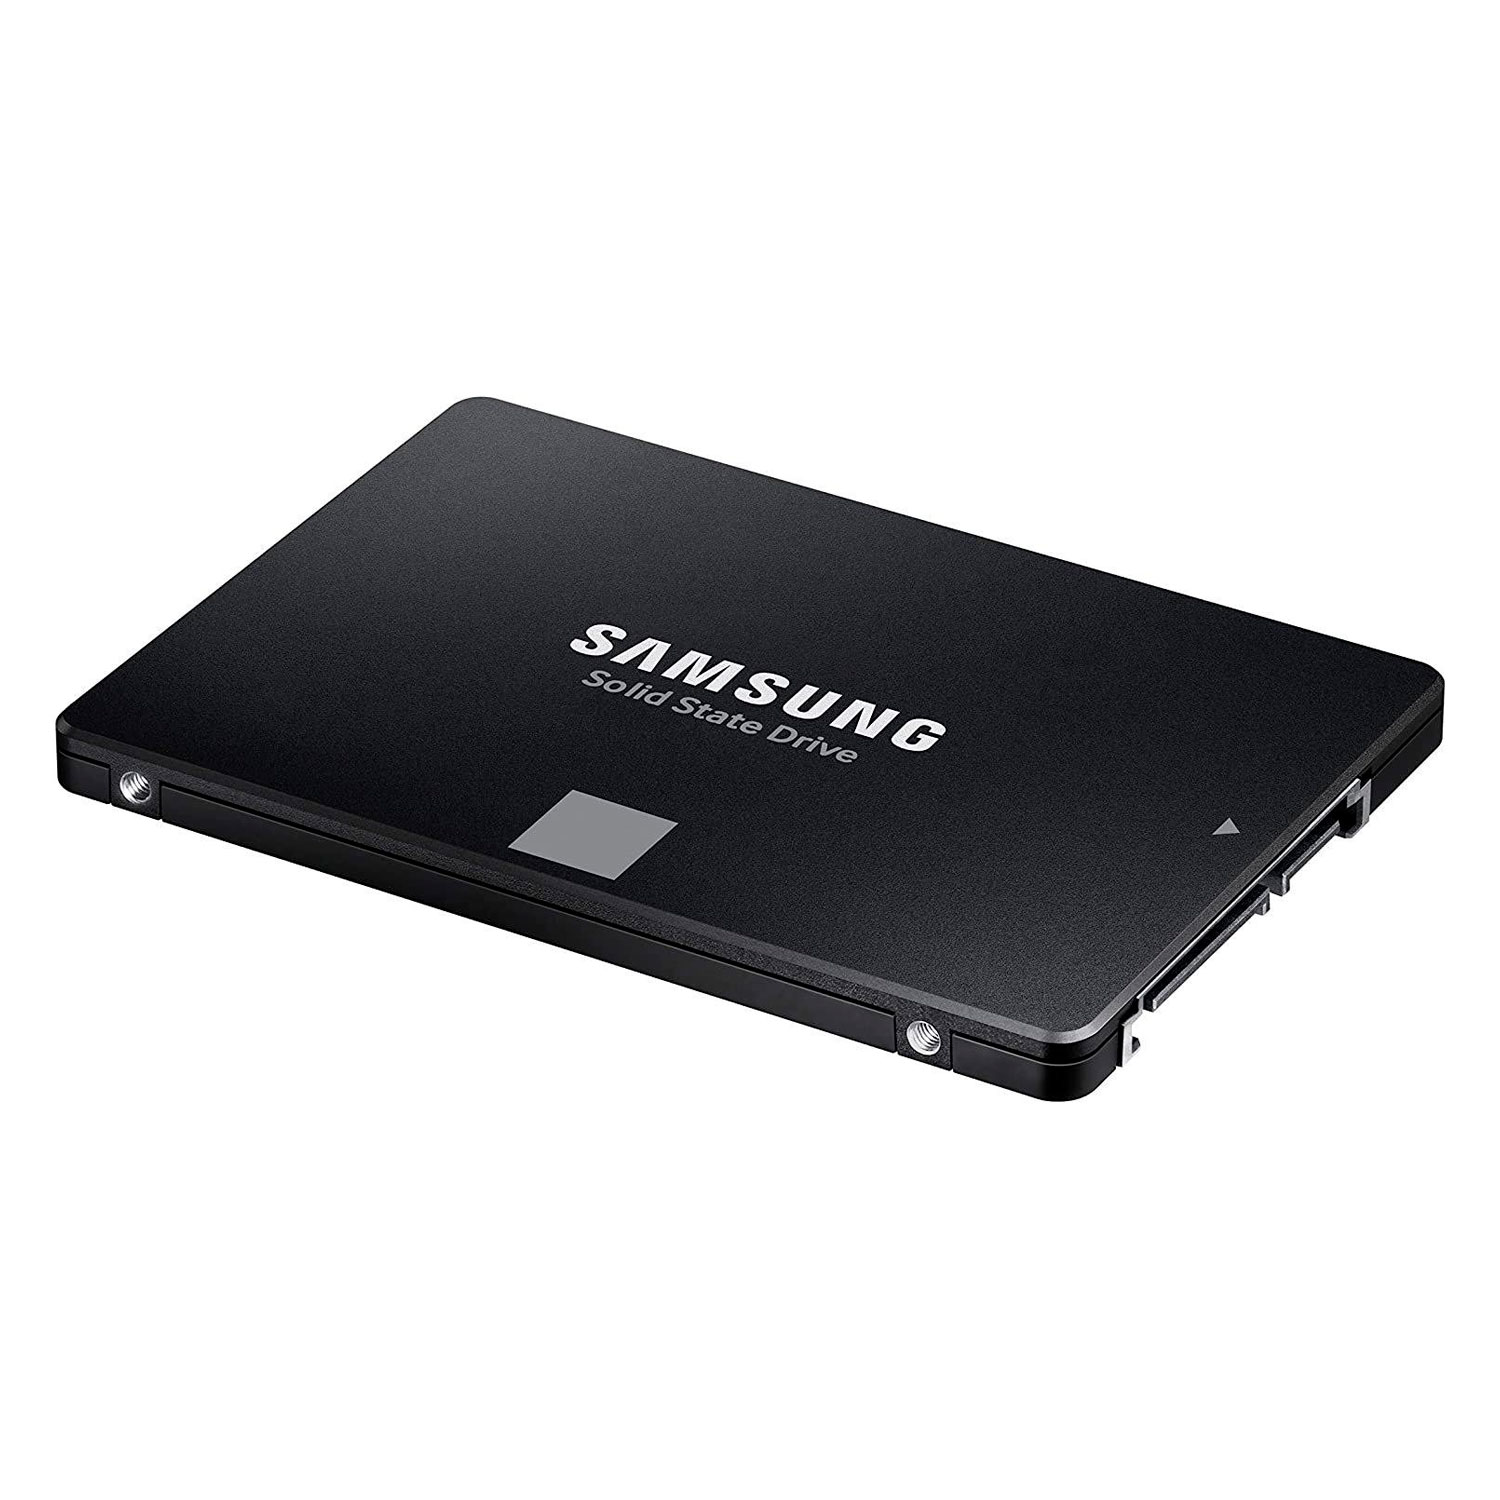 SSD Samsung Evo 870 1TB 2.5" SATA 3 - MZ-77E1T0B/AM